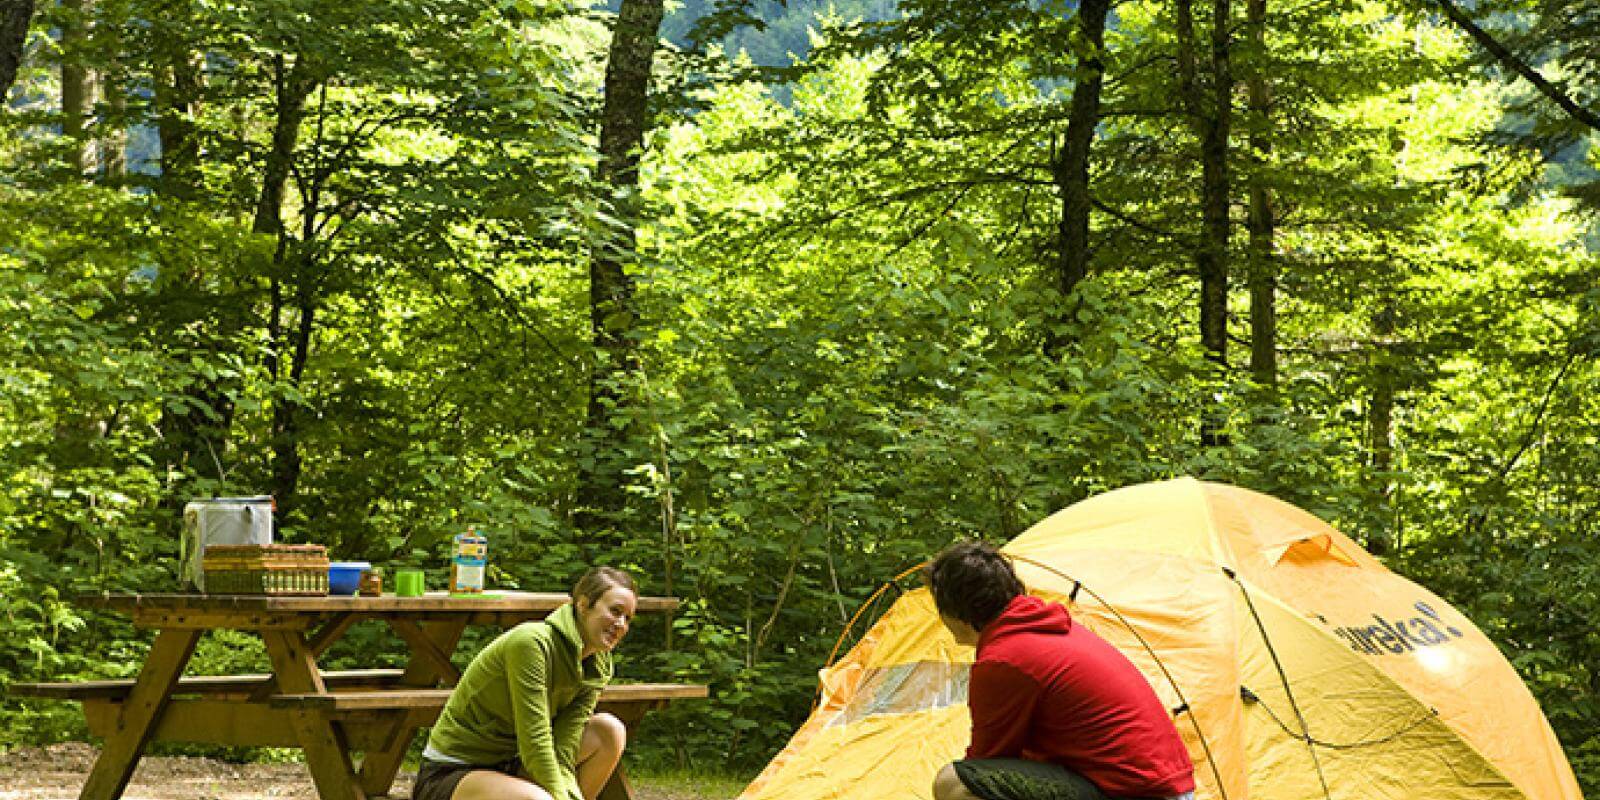 Camping together. Палатка туристическая. Палатка в лесу. Кемпинг на природе. Туризм с палатками.